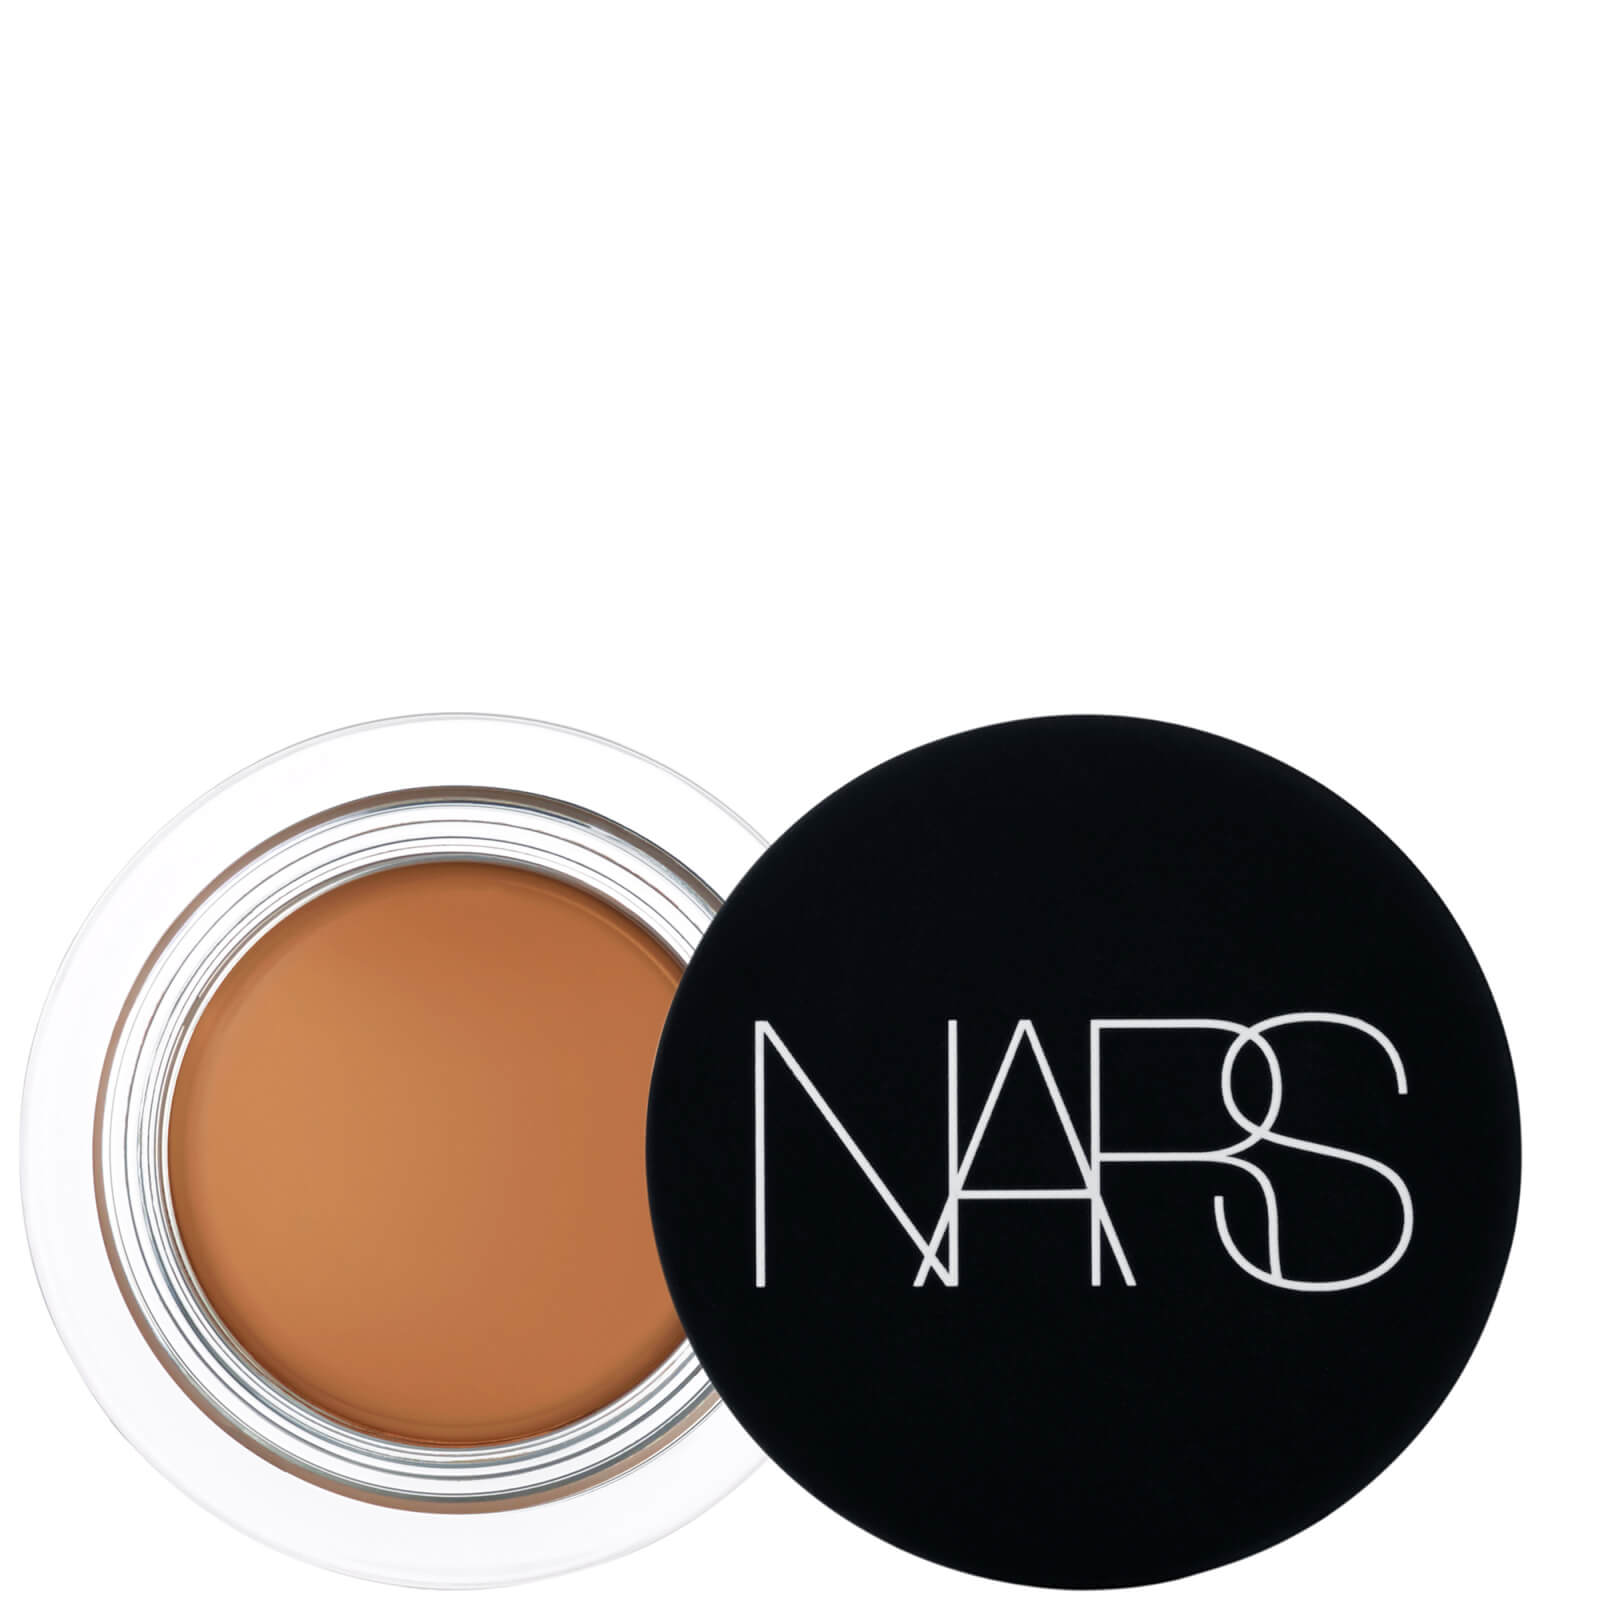 NARS Soft Matte Complete Concealer 6.2g (Various Shades) - Walnut